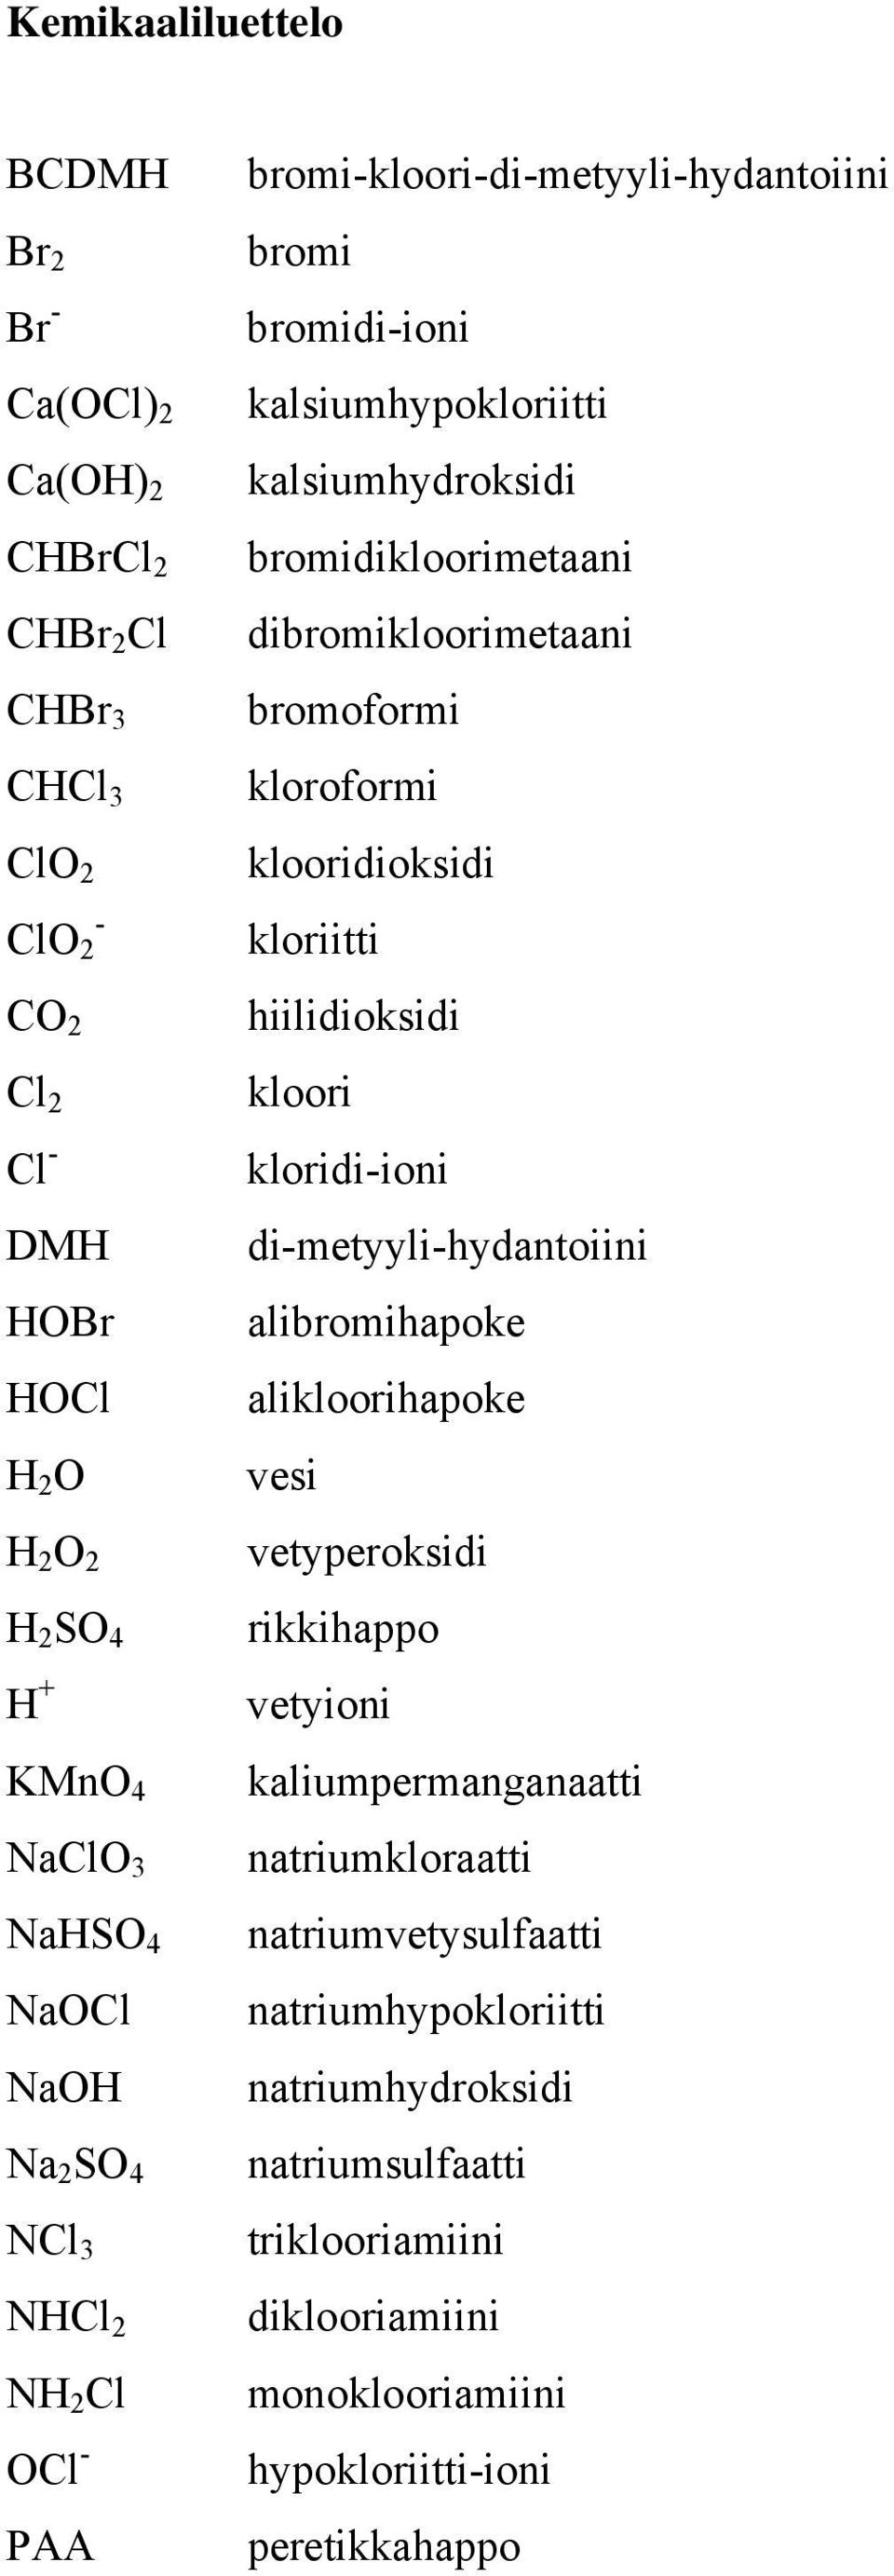 bromoformi kloroformi klooridioksidi kloriitti hiilidioksidi kloori kloridi-ioni di-metyyli-hydantoiini alibromihapoke alikloorihapoke vesi vetyperoksidi rikkihappo vetyioni